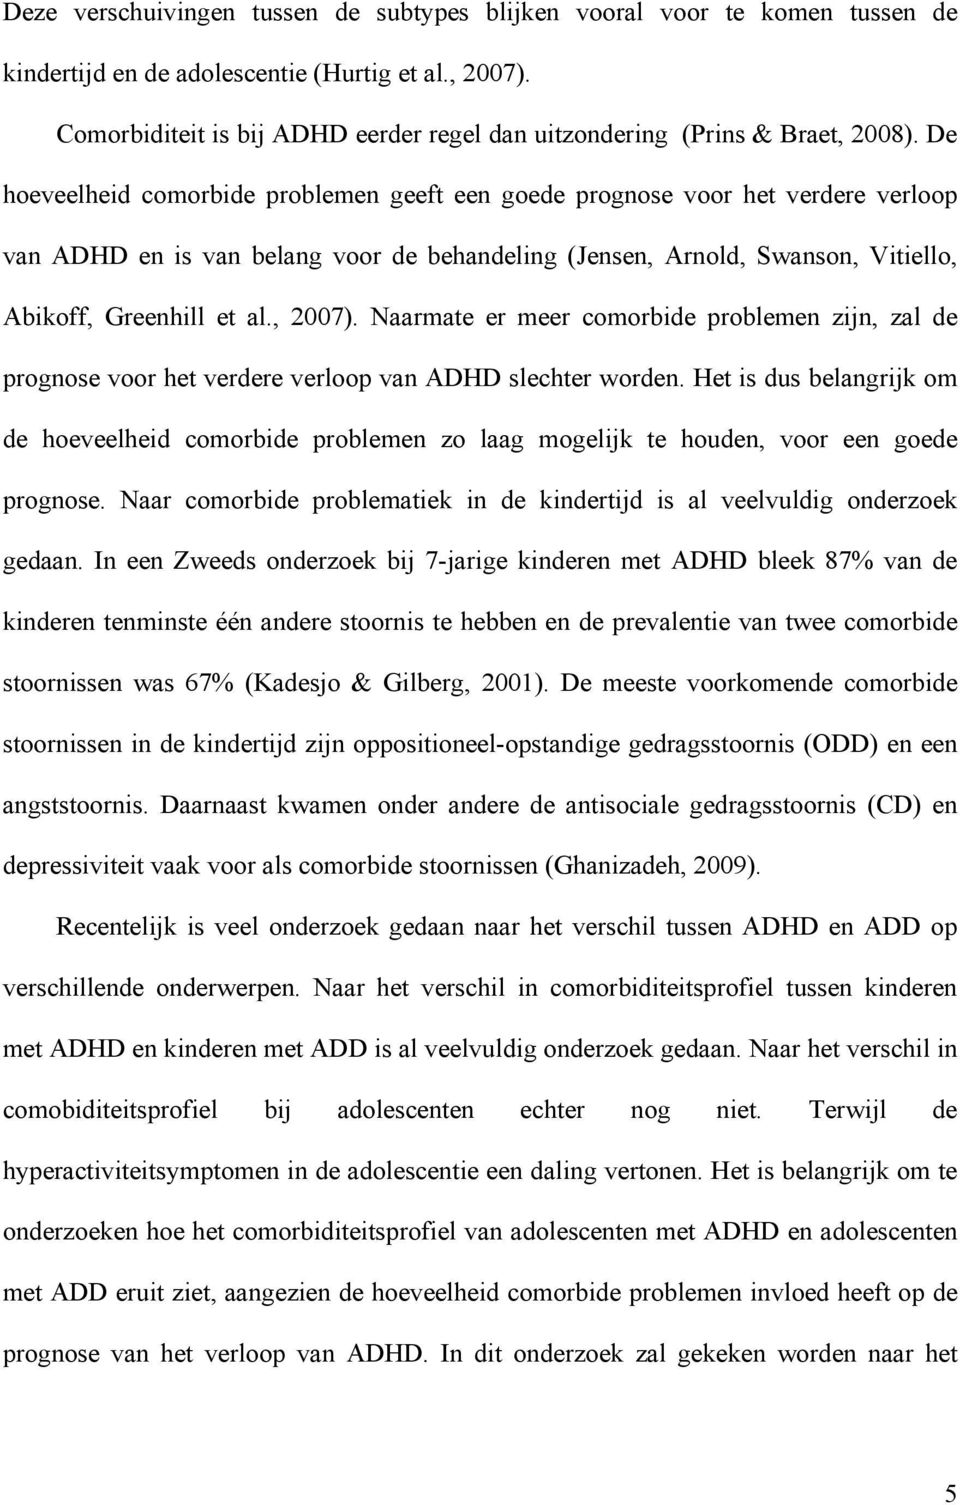 De hoeveelheid comorbide problemen geeft een goede prognose voor het verdere verloop van ADHD en is van belang voor de behandeling (Jensen, Arnold, Swanson, Vitiello, Abikoff, Greenhill et al., 2007).